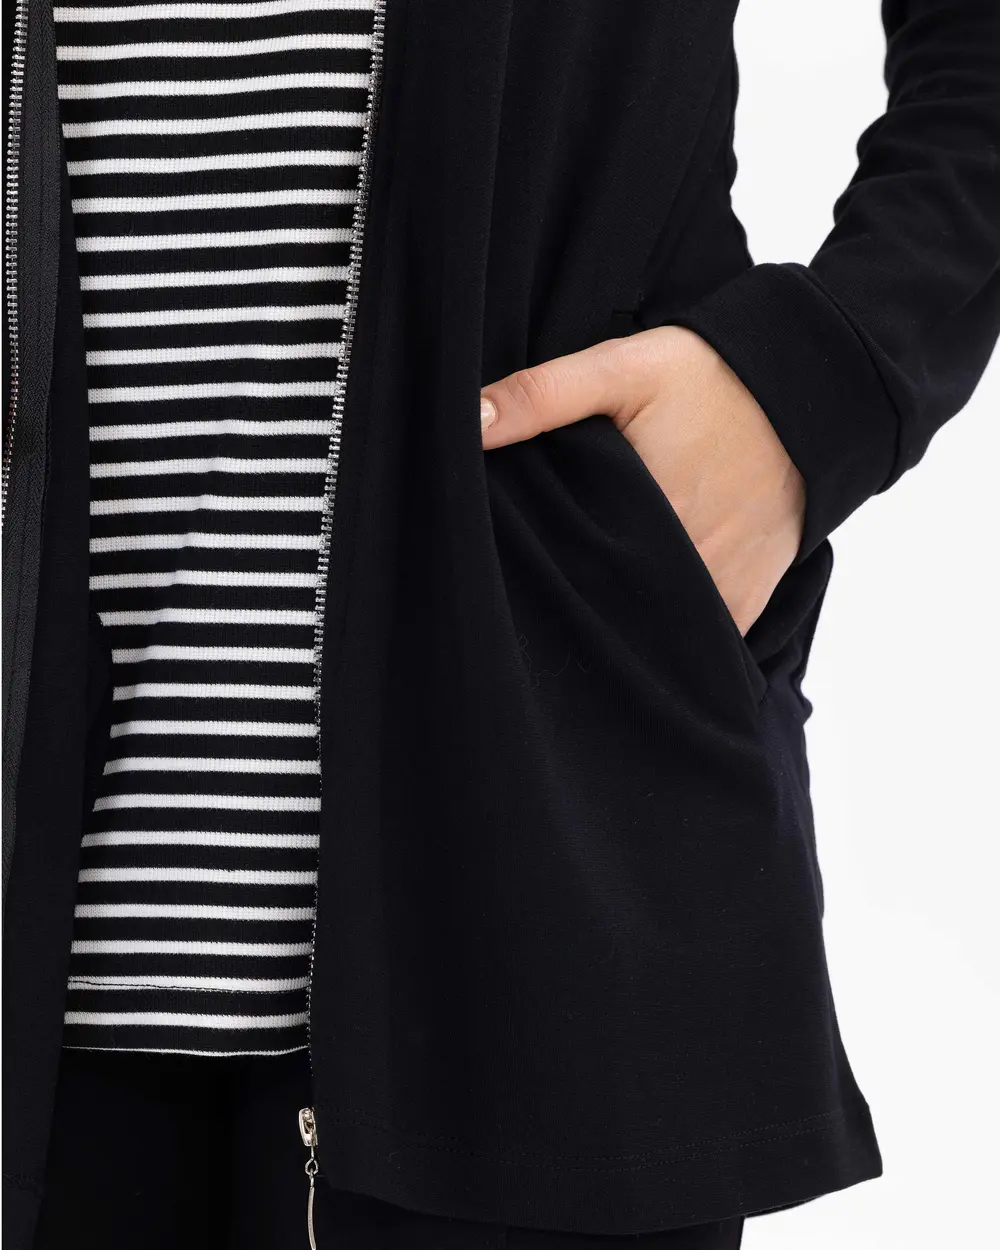 Striped Sleeveless T-Shirt Zipper Jacket